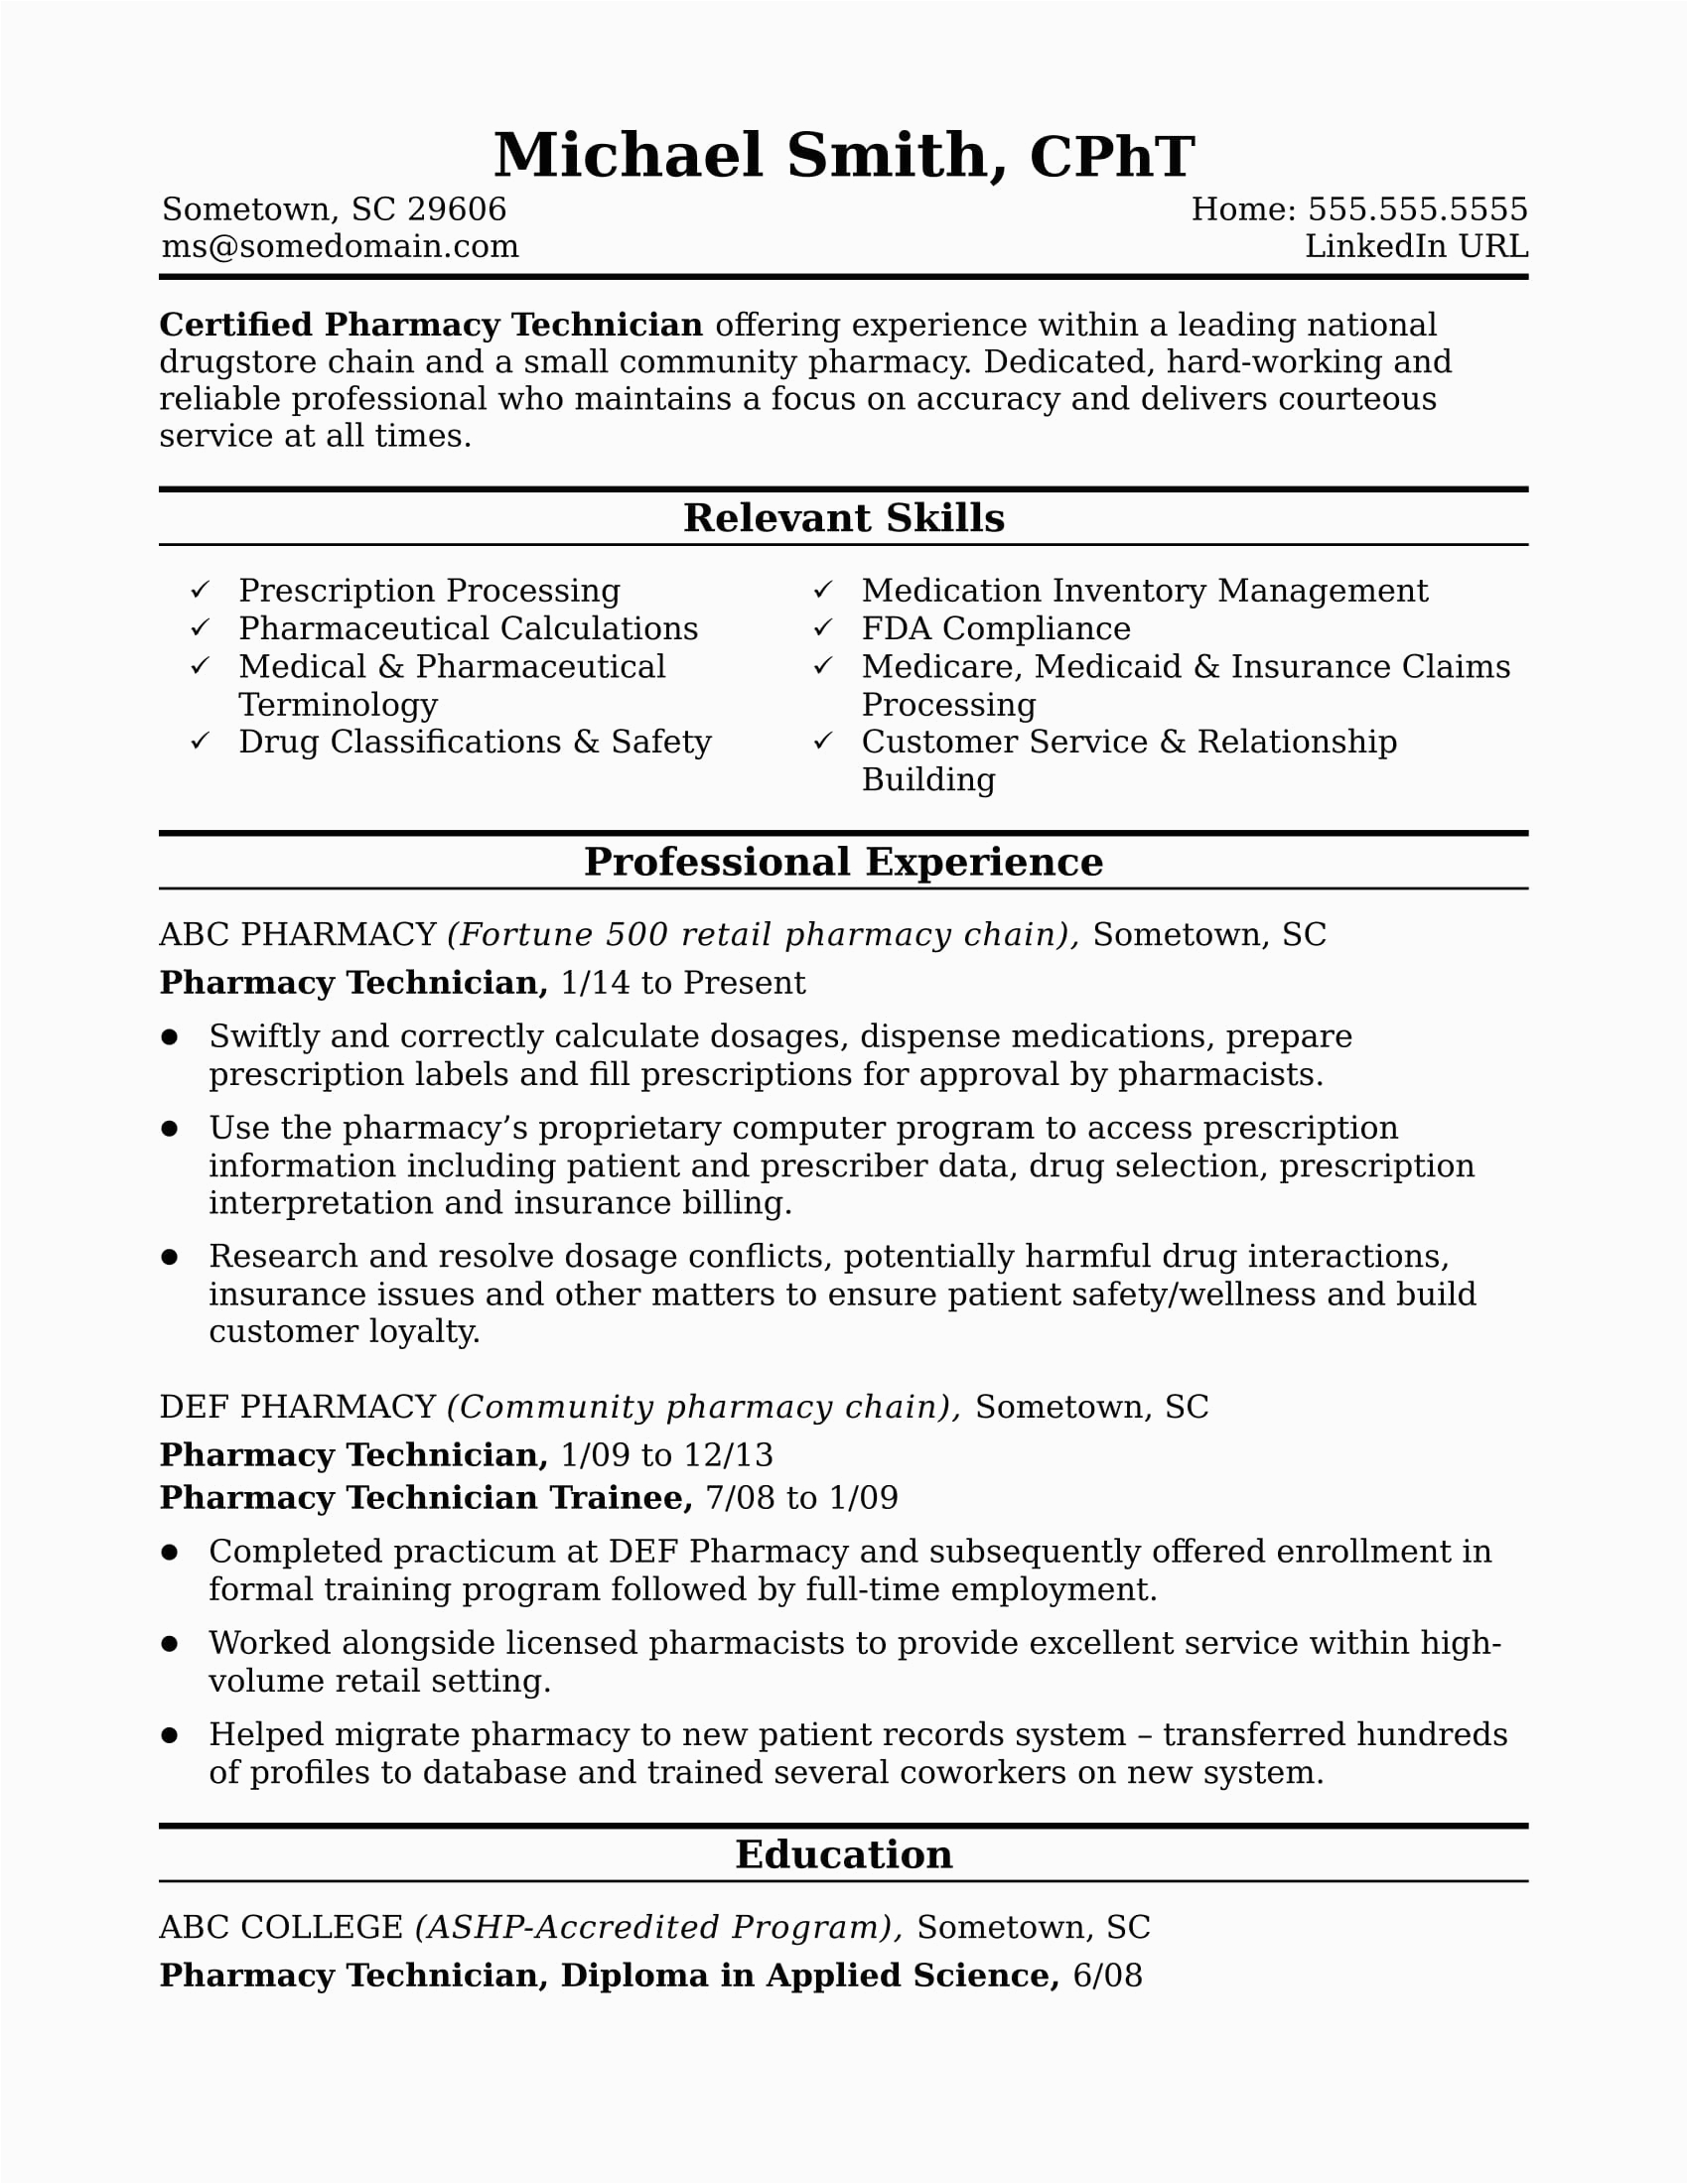 Sample Resume for Pharmacy Technician Job Midlevel Pharmacy Technician Resume Sample